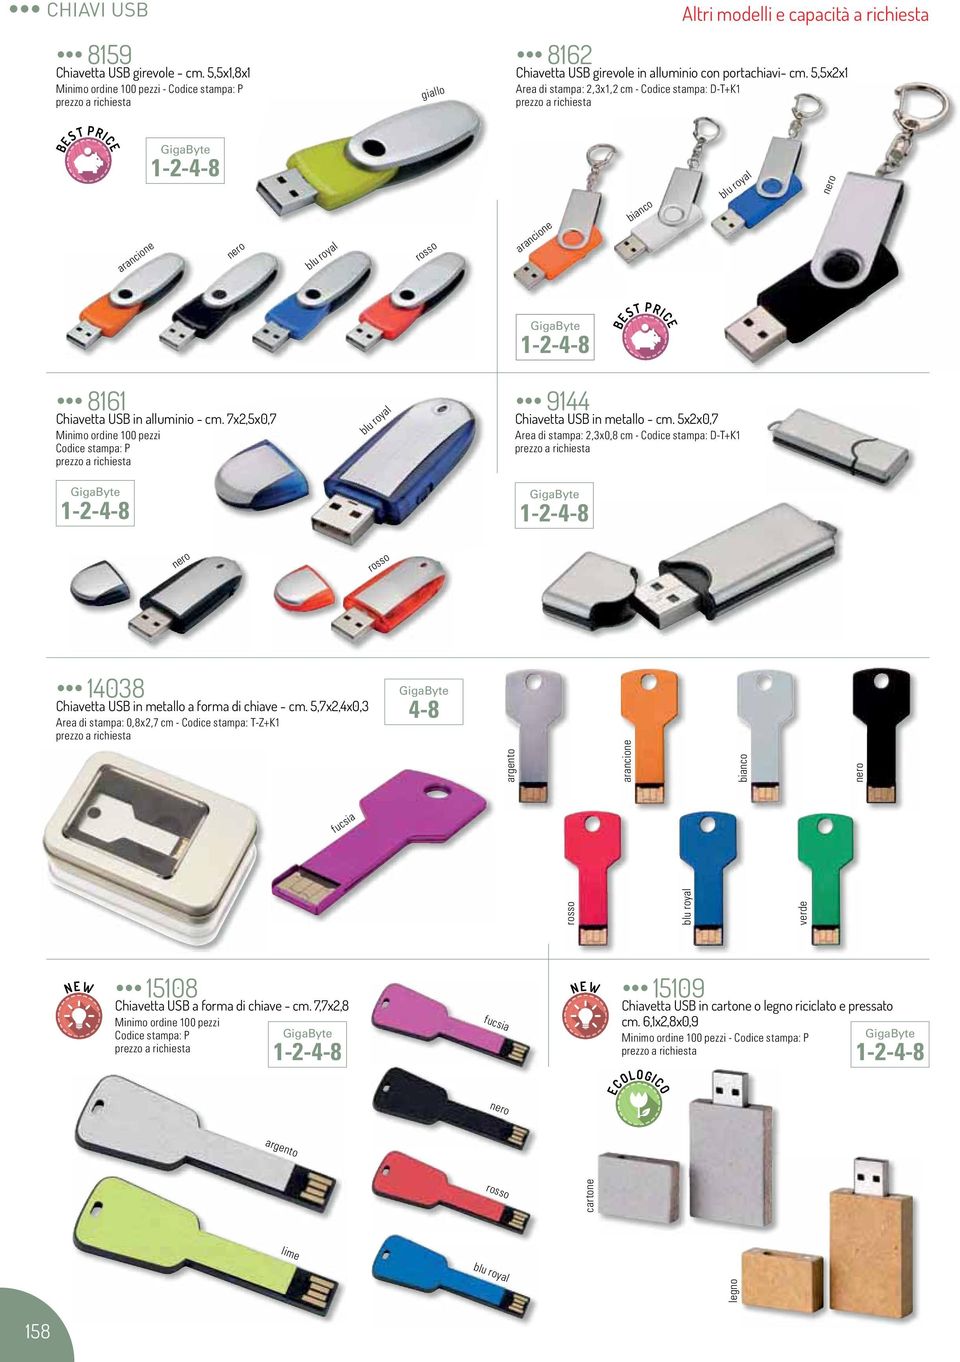 7x2,5x0,7 Minimo ordine 100 pezzi Codice stampa: P 1-2-4-8 9144 Chiavetta USB in metallo - cm.